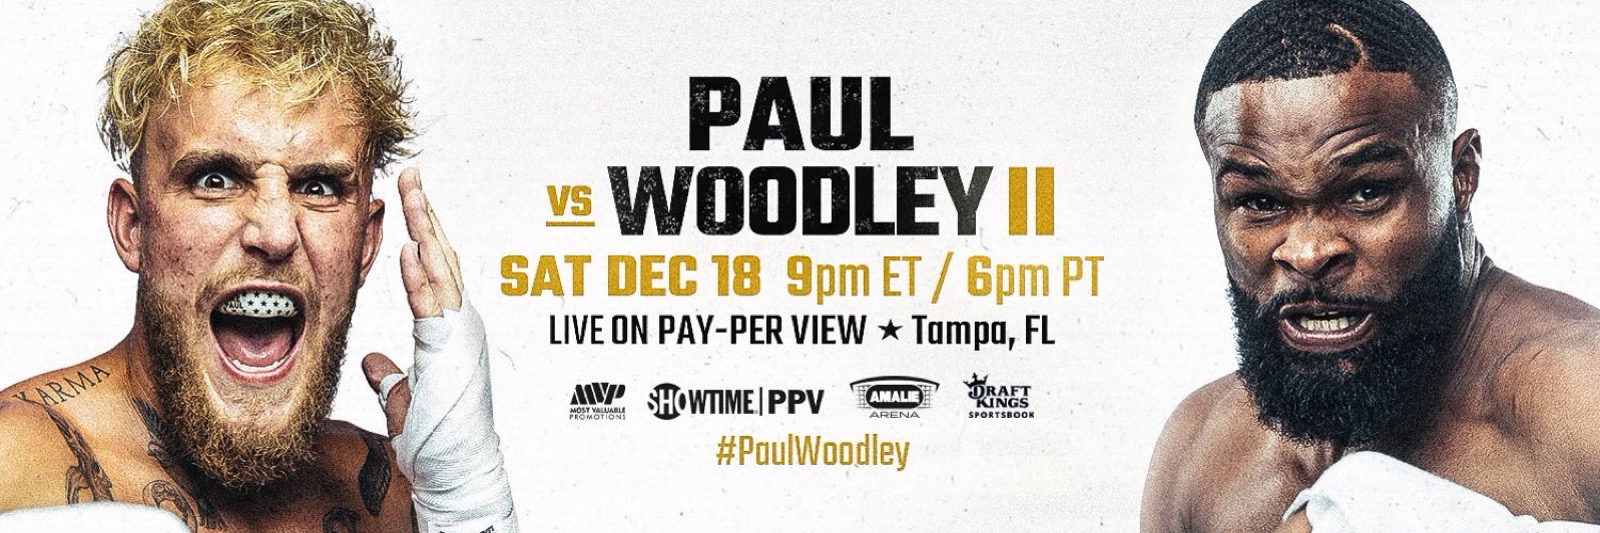 Paul vs Woodley II - Showtime PPV, FITE - Dec. 18 - 9 pm ET